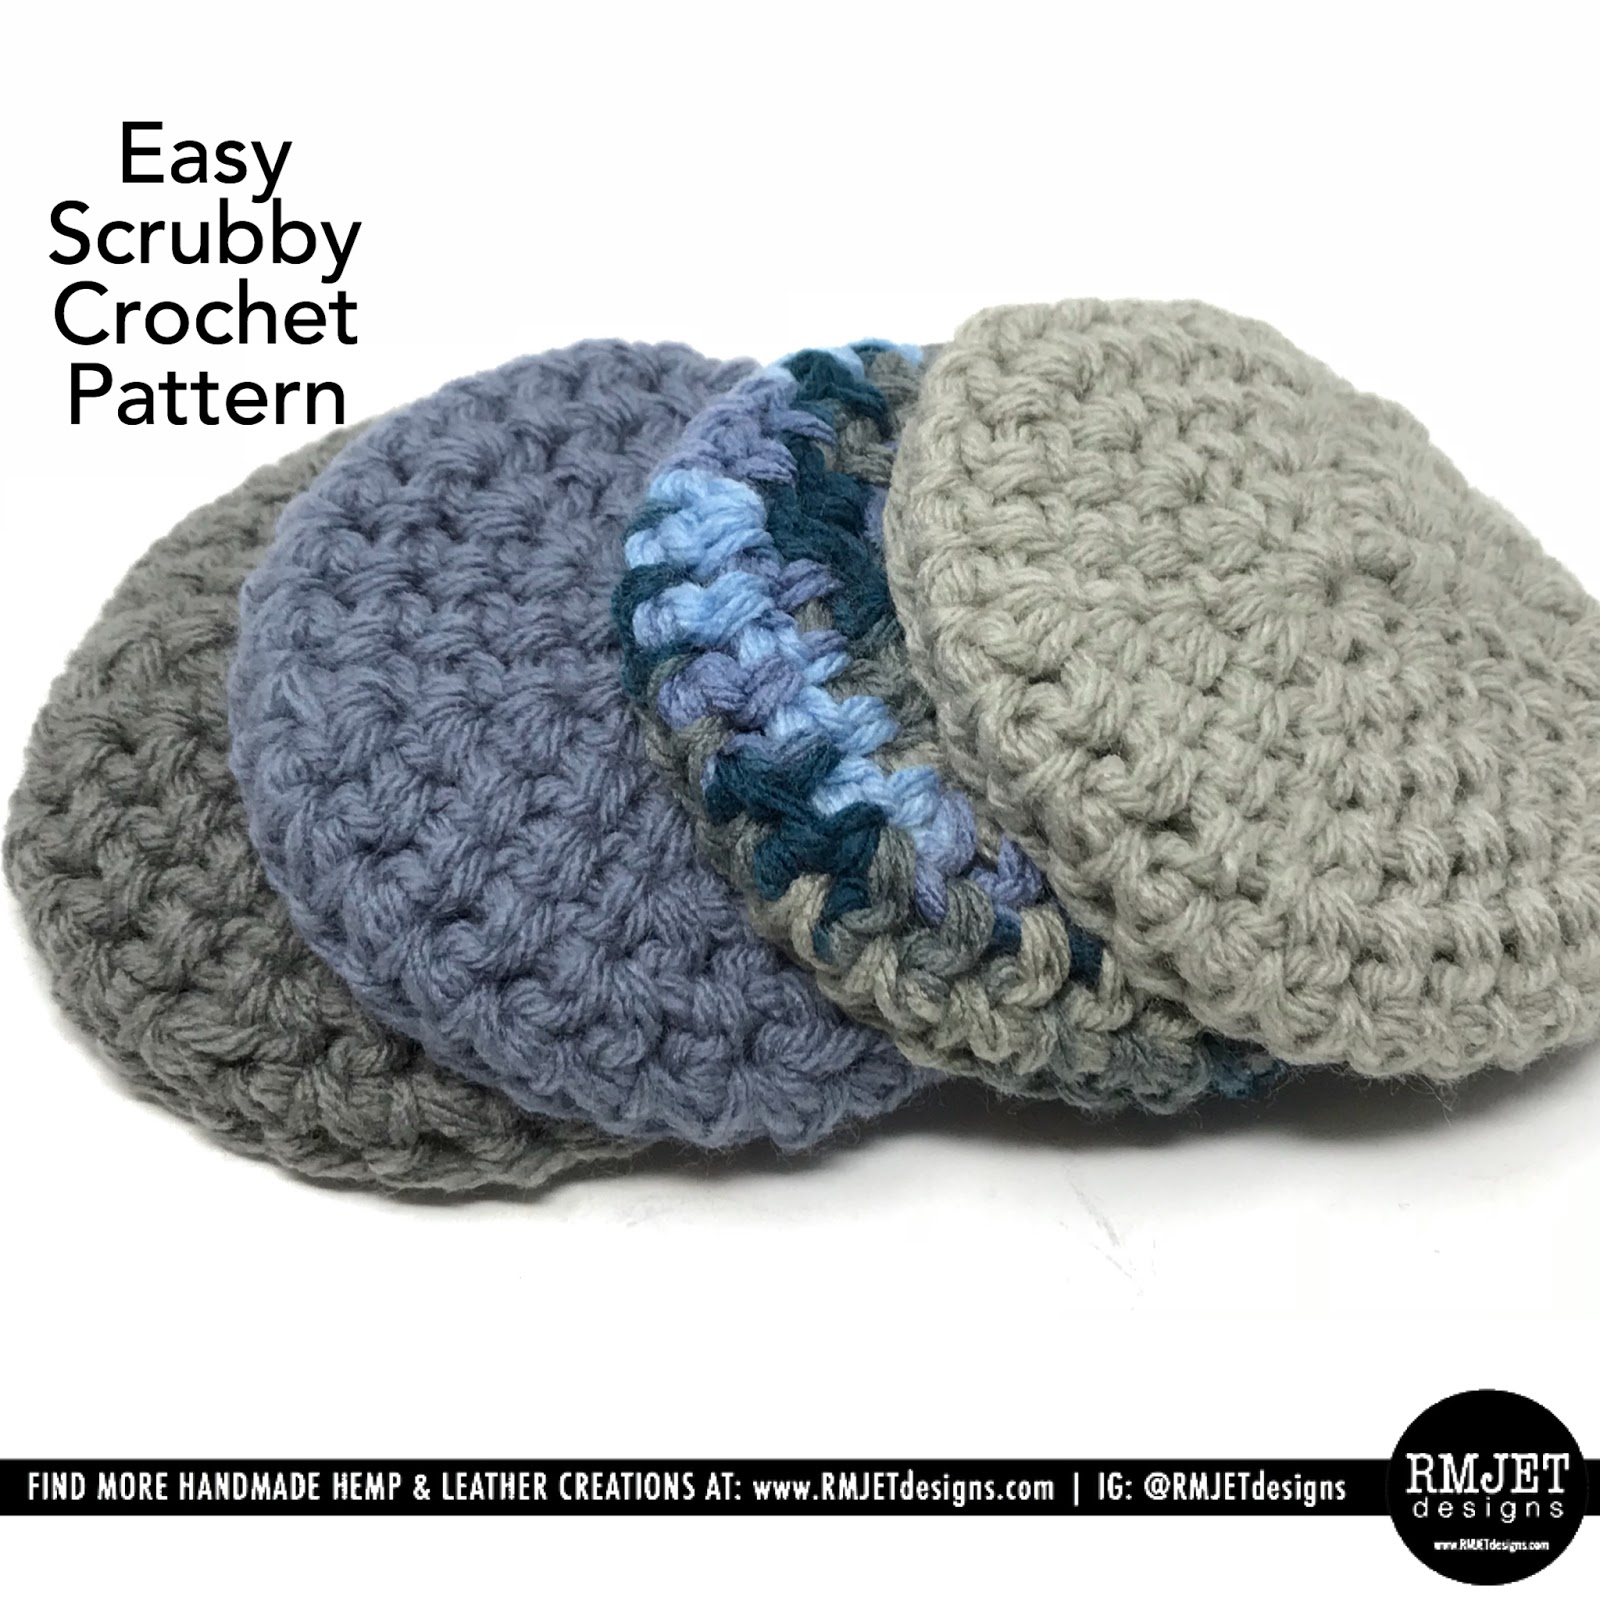 Easy Scrubby FREE Crochet Pattern by RMJETdesigns